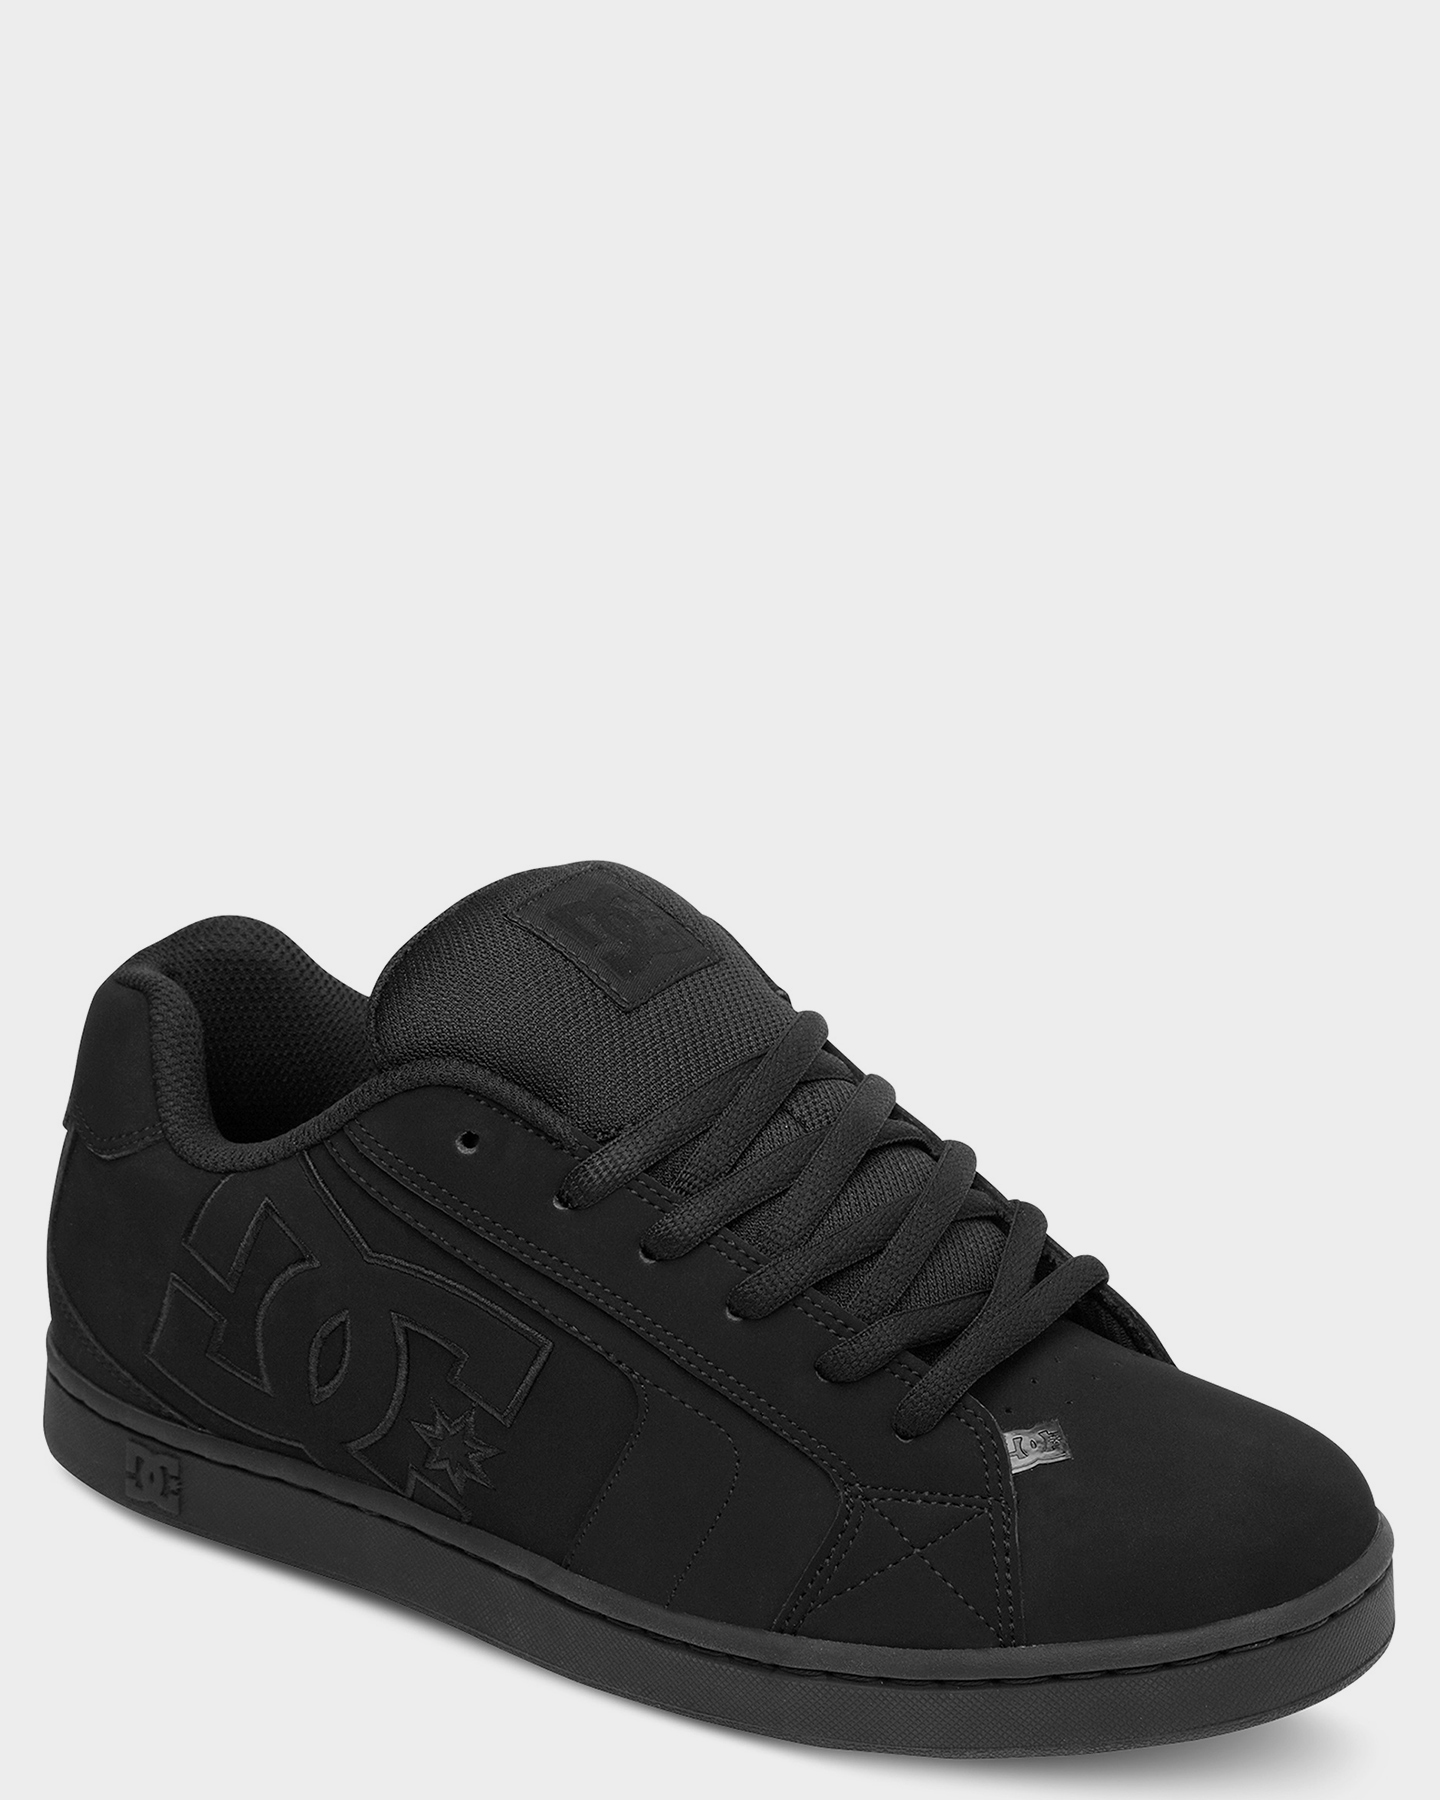 Edición monigote de nieve eco Dc Shoes Mens Net Leather Shoe - Black Black Black | SurfStitch